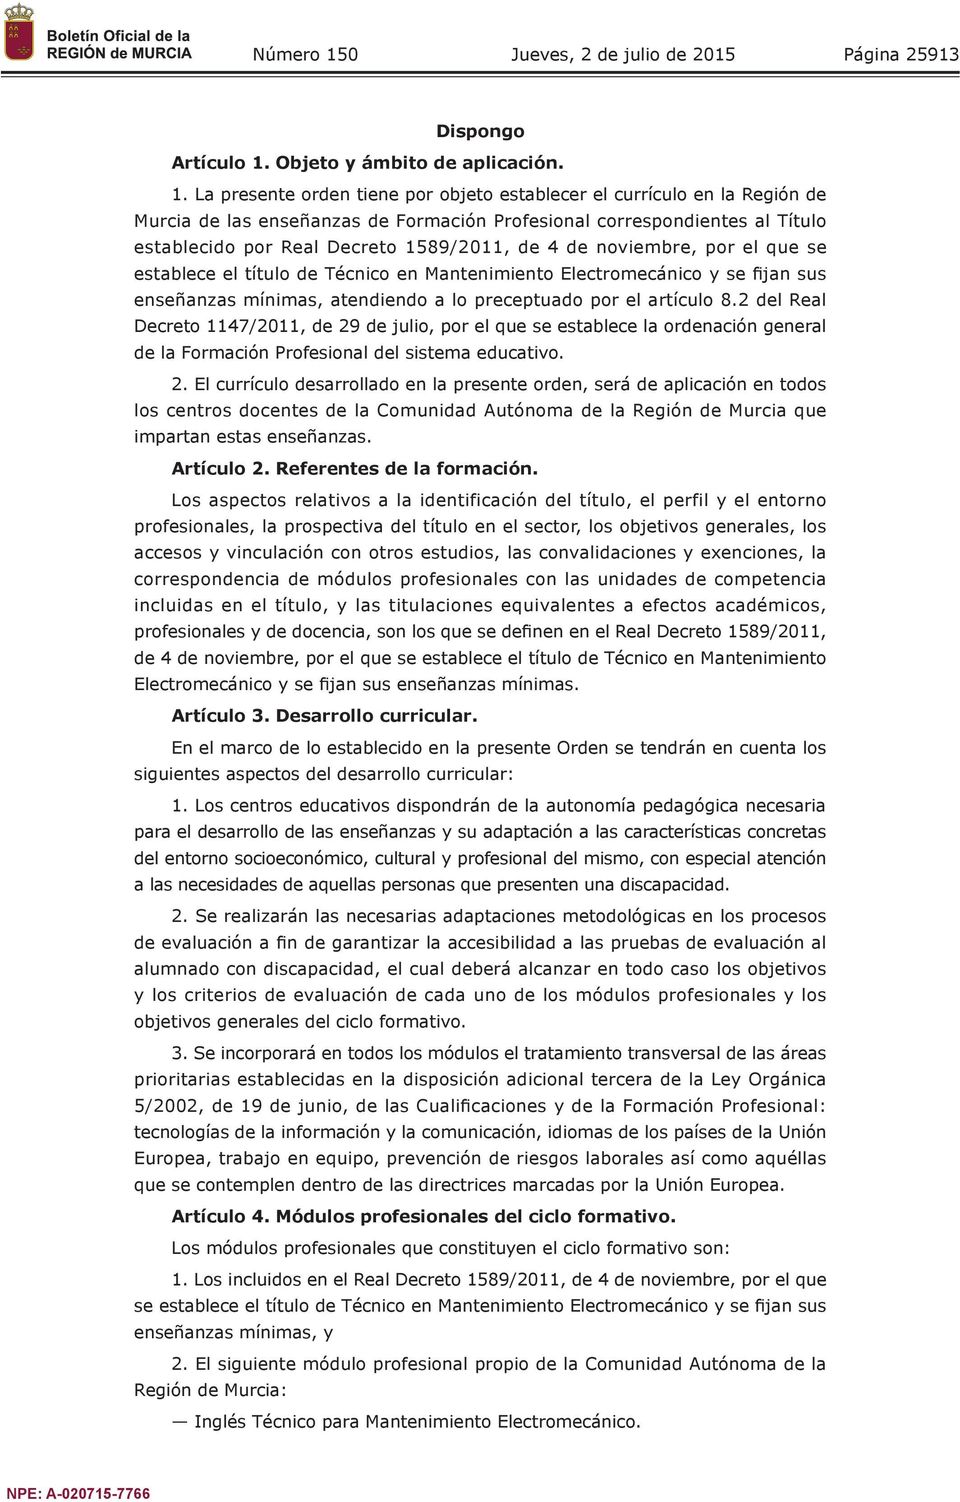 La presente orden tiene por objeto establecer el currículo en la Región de Murcia de las enseñanzas de Formación Profesional correspondientes al Título establecido por Real Decreto 1589/2011, de 4 de